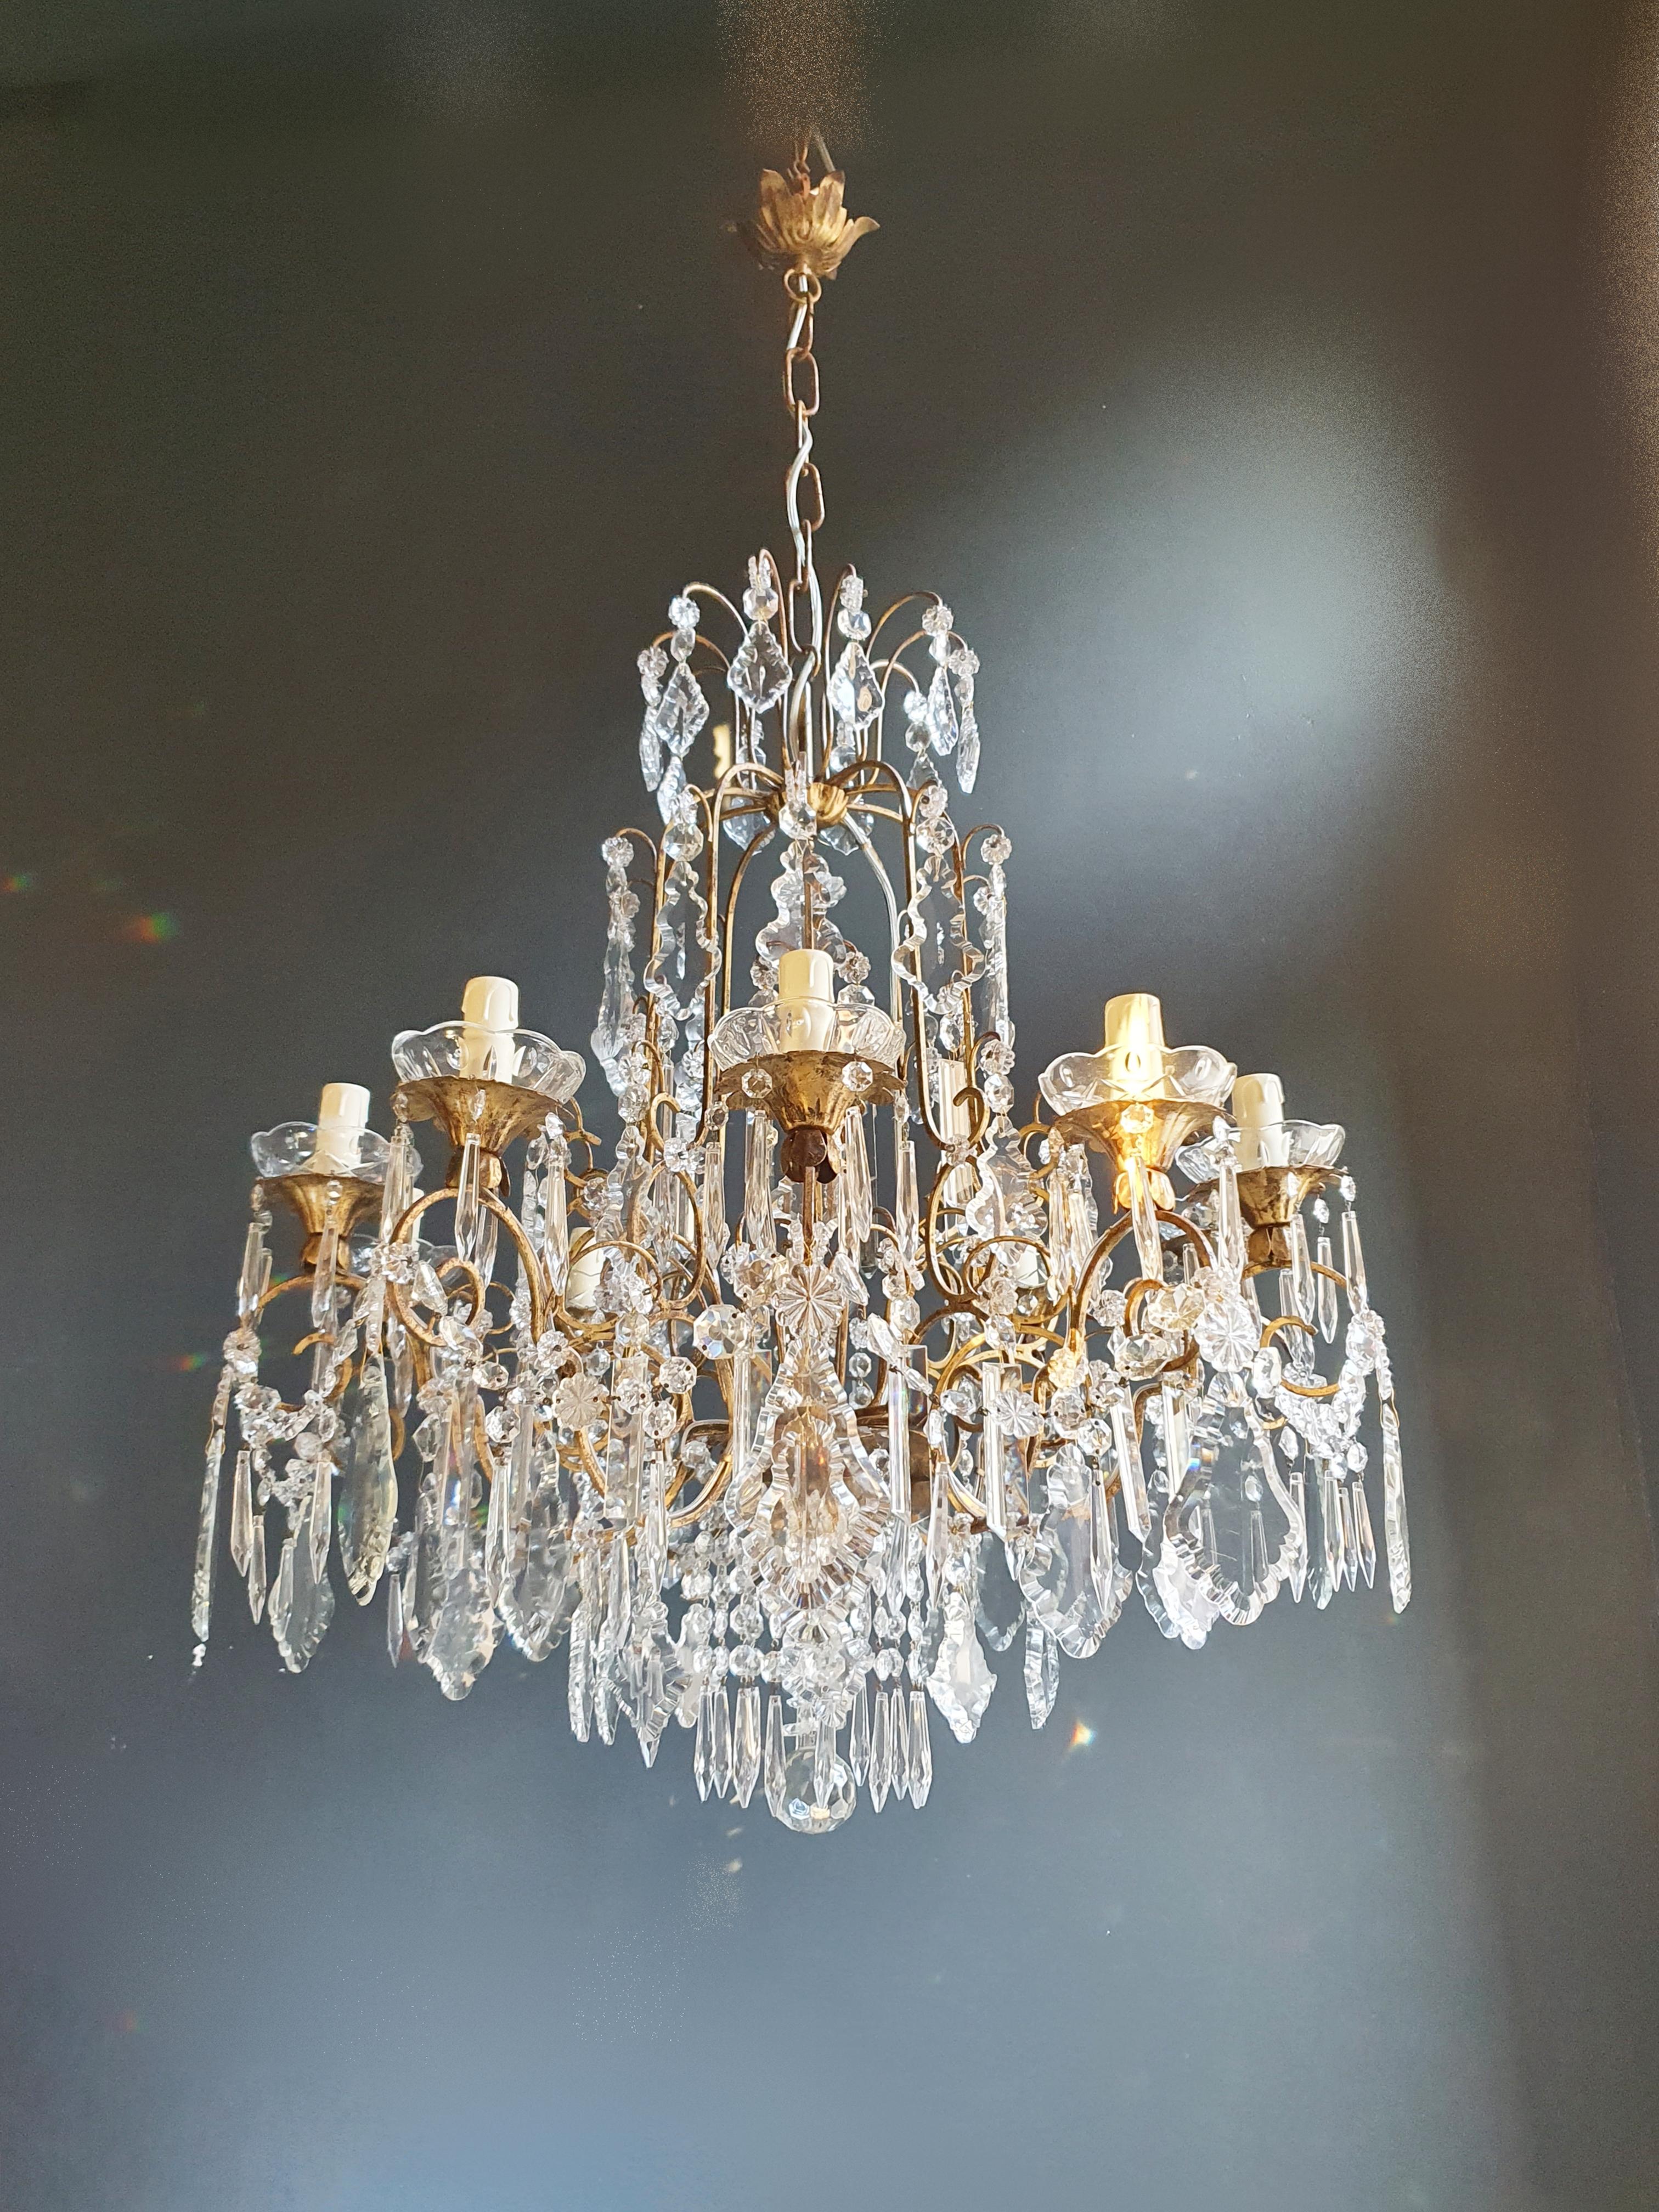 Mid-20th Century Brass Crystal Chandelier Antique Ceiling Lamp Lustre Art Nouveau Lamp For Sale